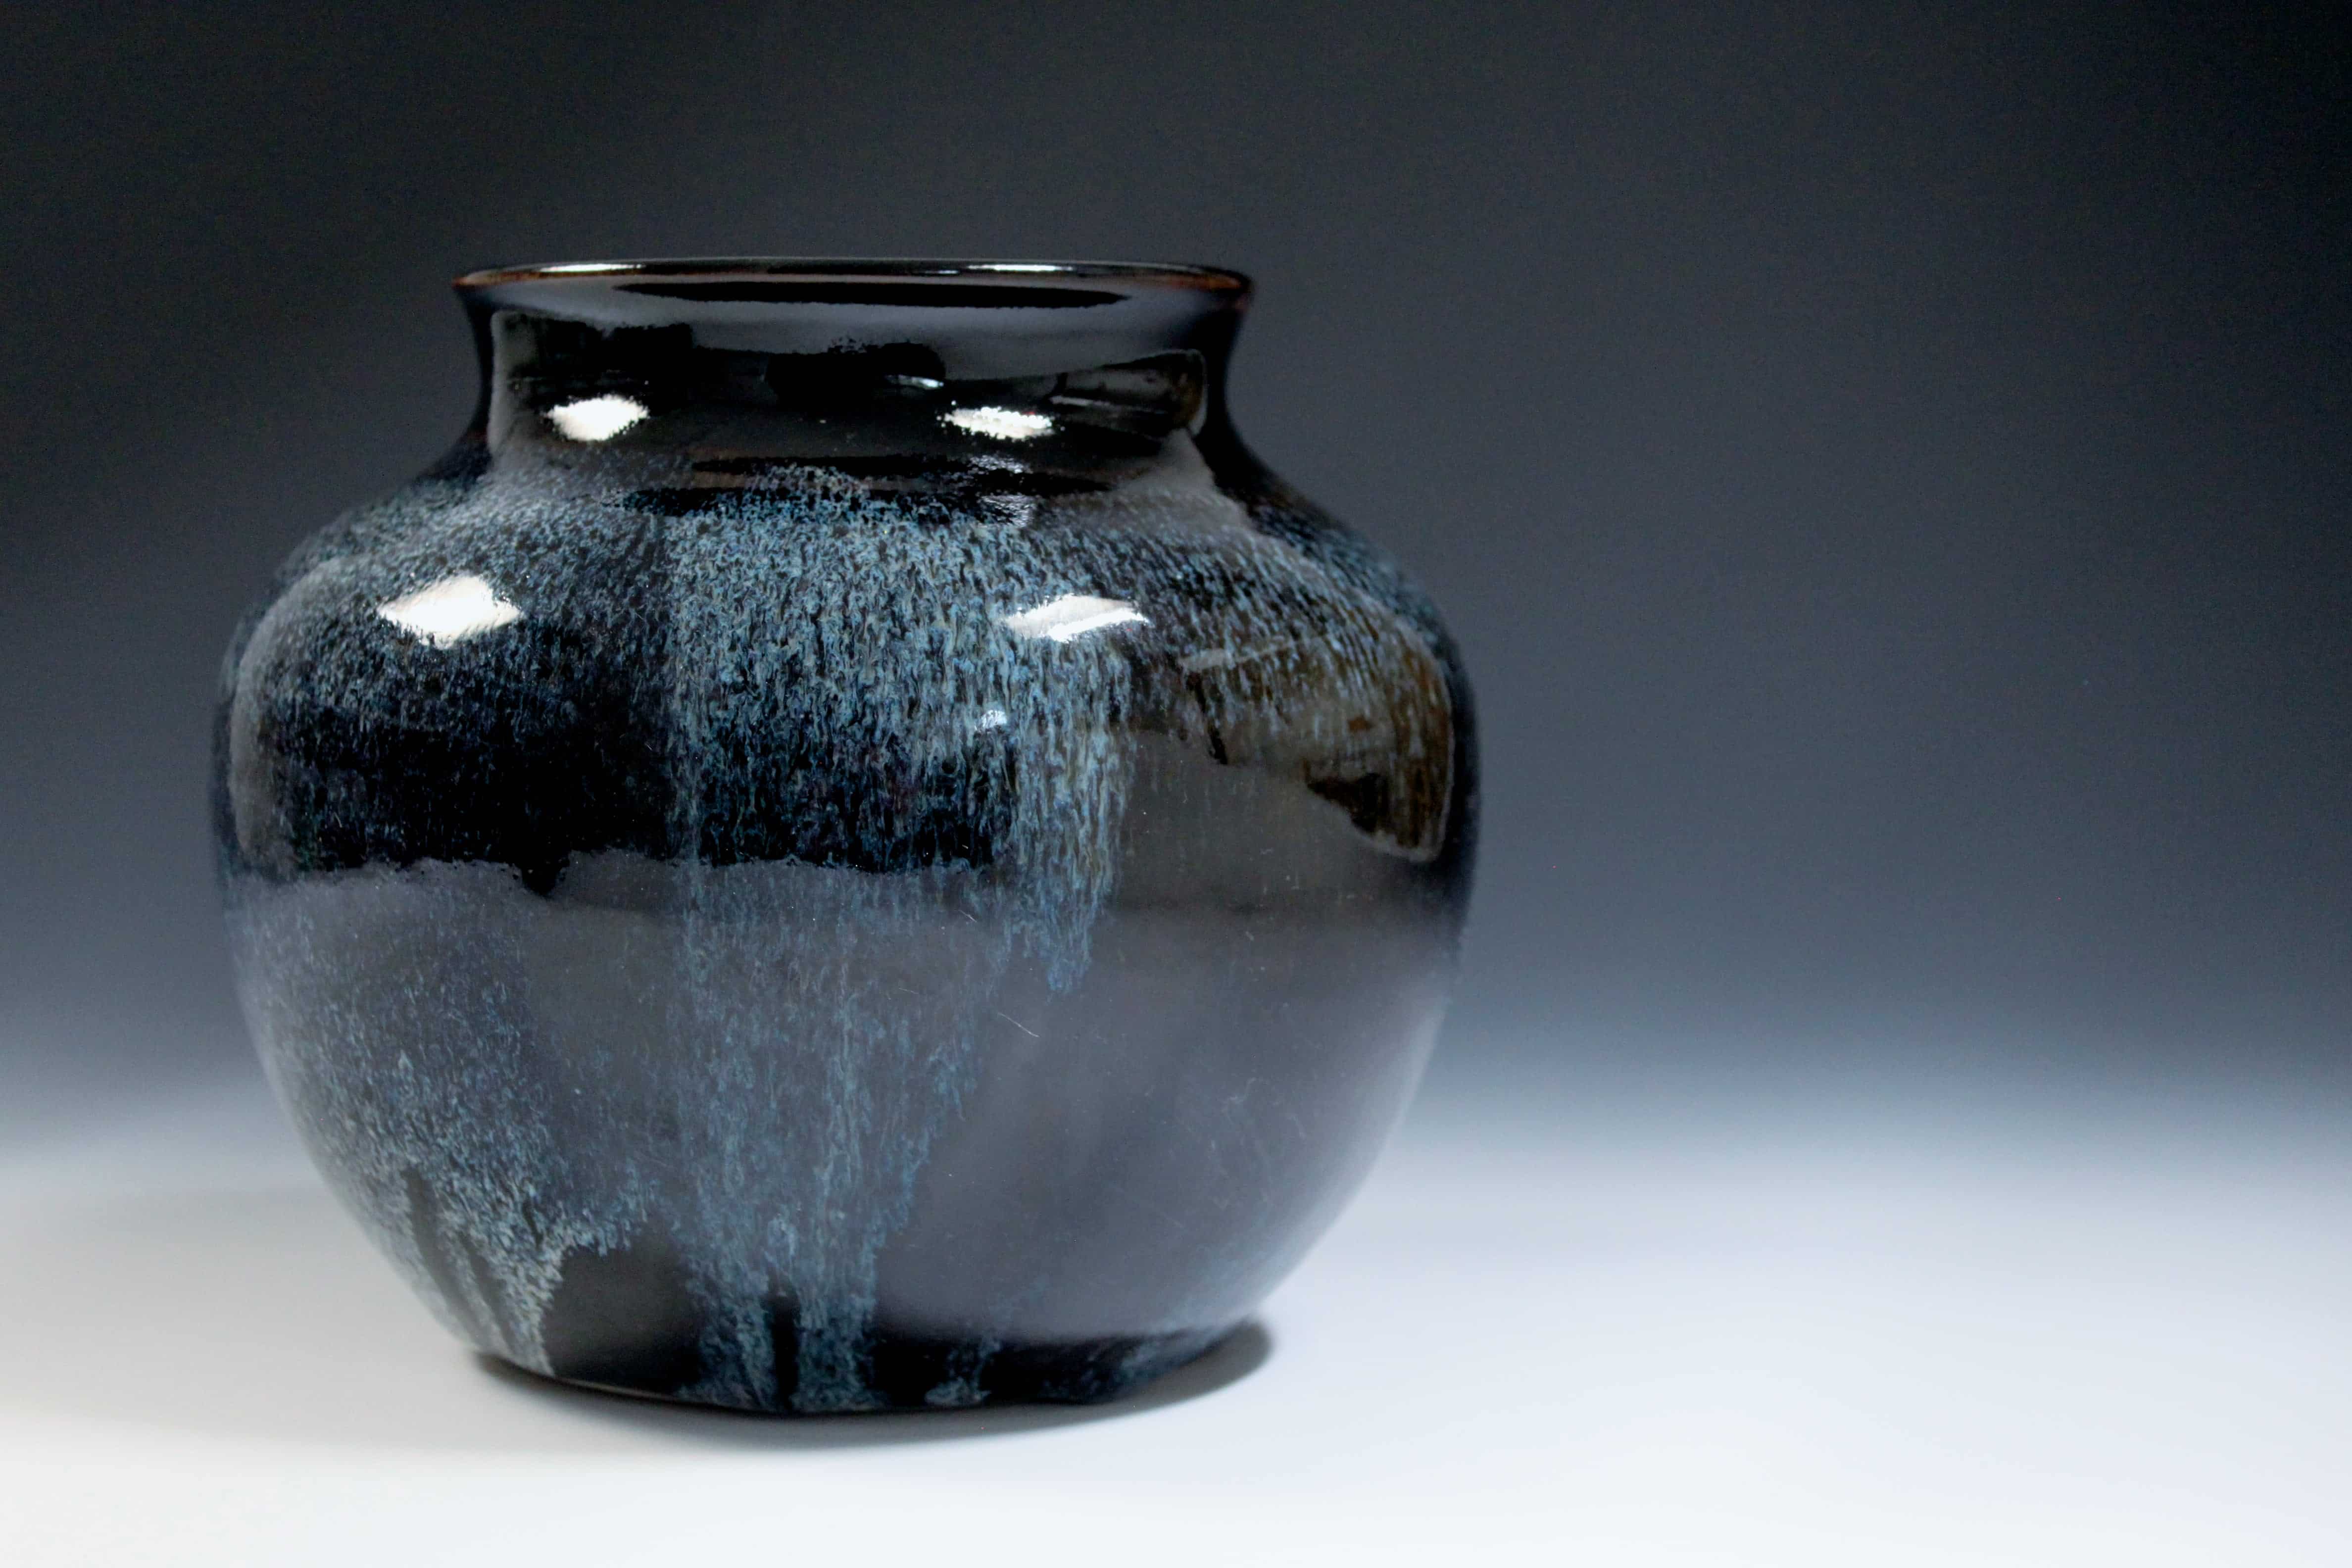 Fotografi av keramikvas med spräcklig glasyr i blått och mörkgrönt.